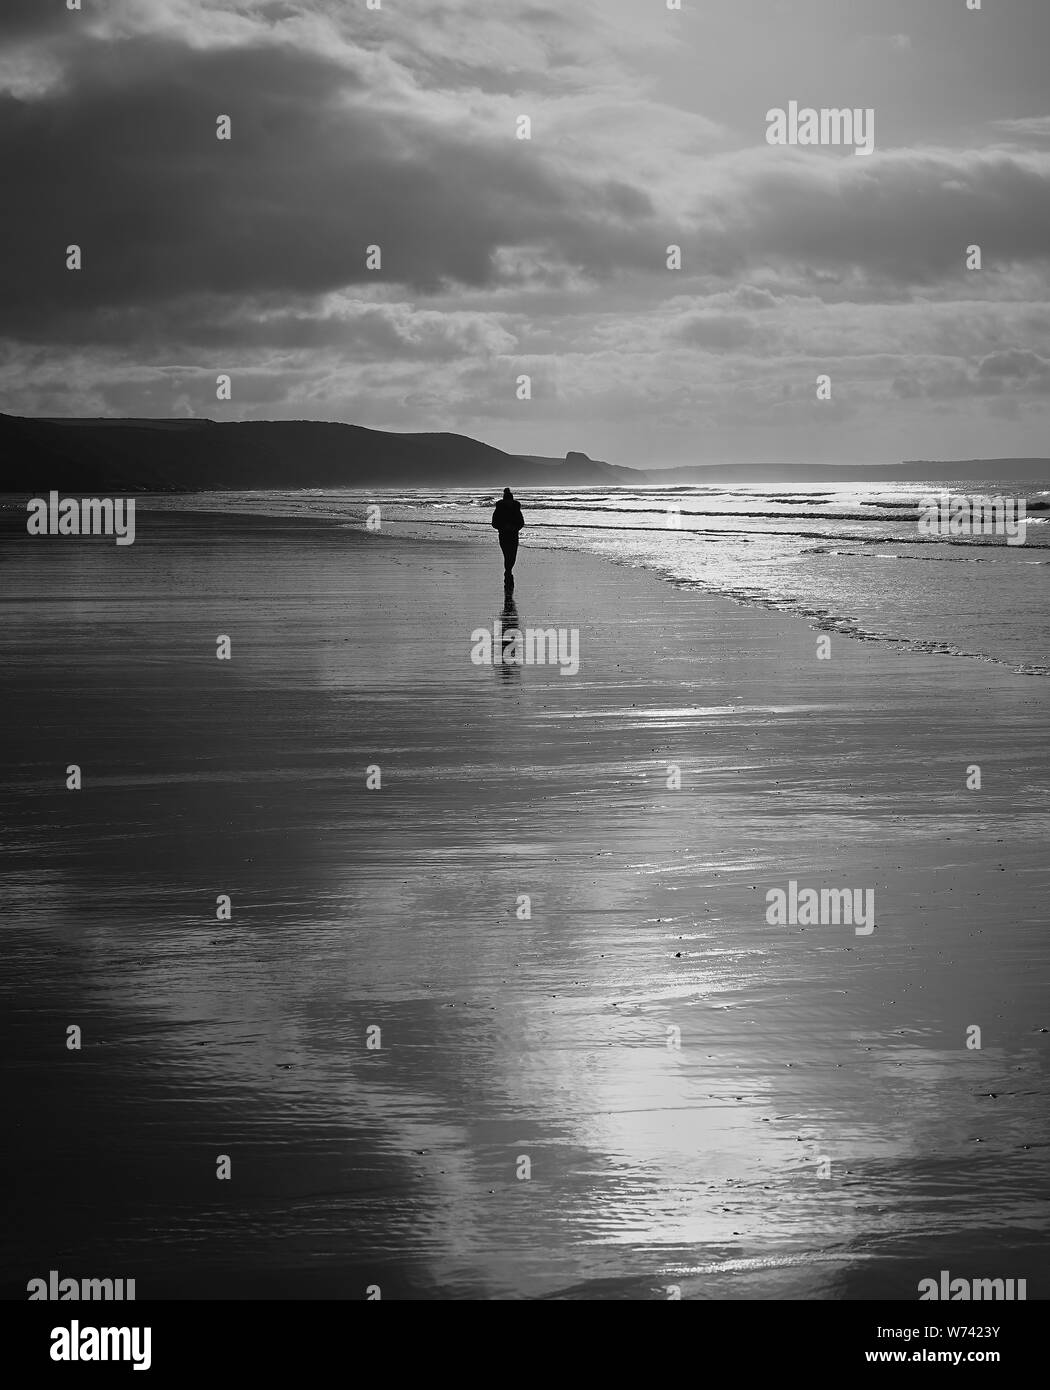 Solitudine:Una silhouette di un individuo a piedi lungo una spiaggia desolata in una mattinata d'inverno. L'immagine in bianco e nero mette in evidenza le riflessioni & scena. Foto Stock